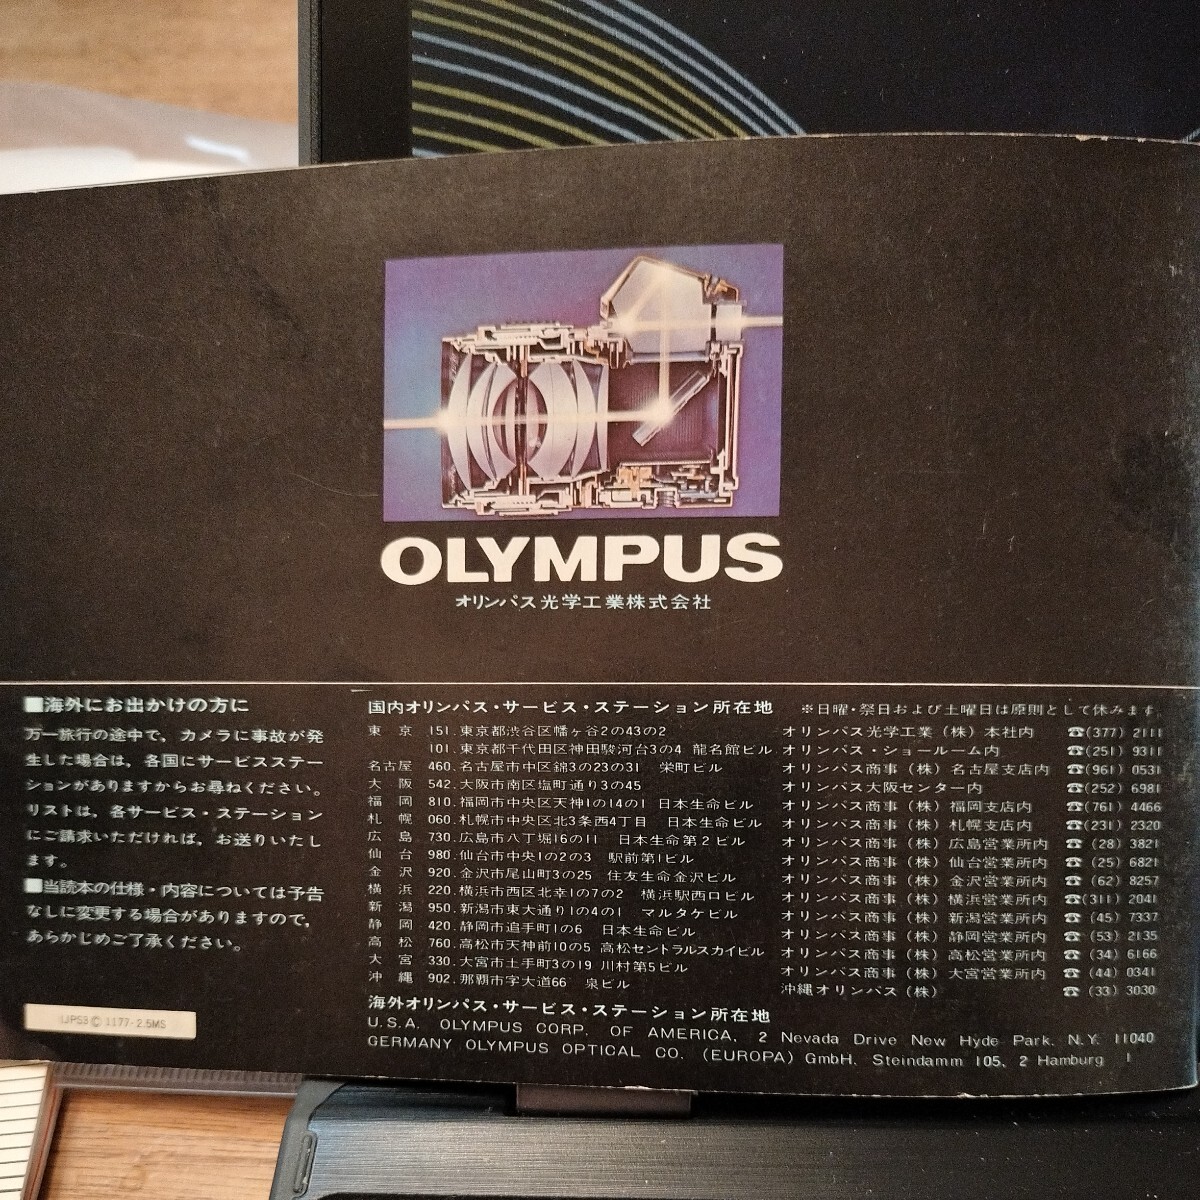 【 редко встречающийся  *   японский язык  издание 】 Olympus   вспышка ... шт.   OM система  ... автоматический  310/240/PS200 